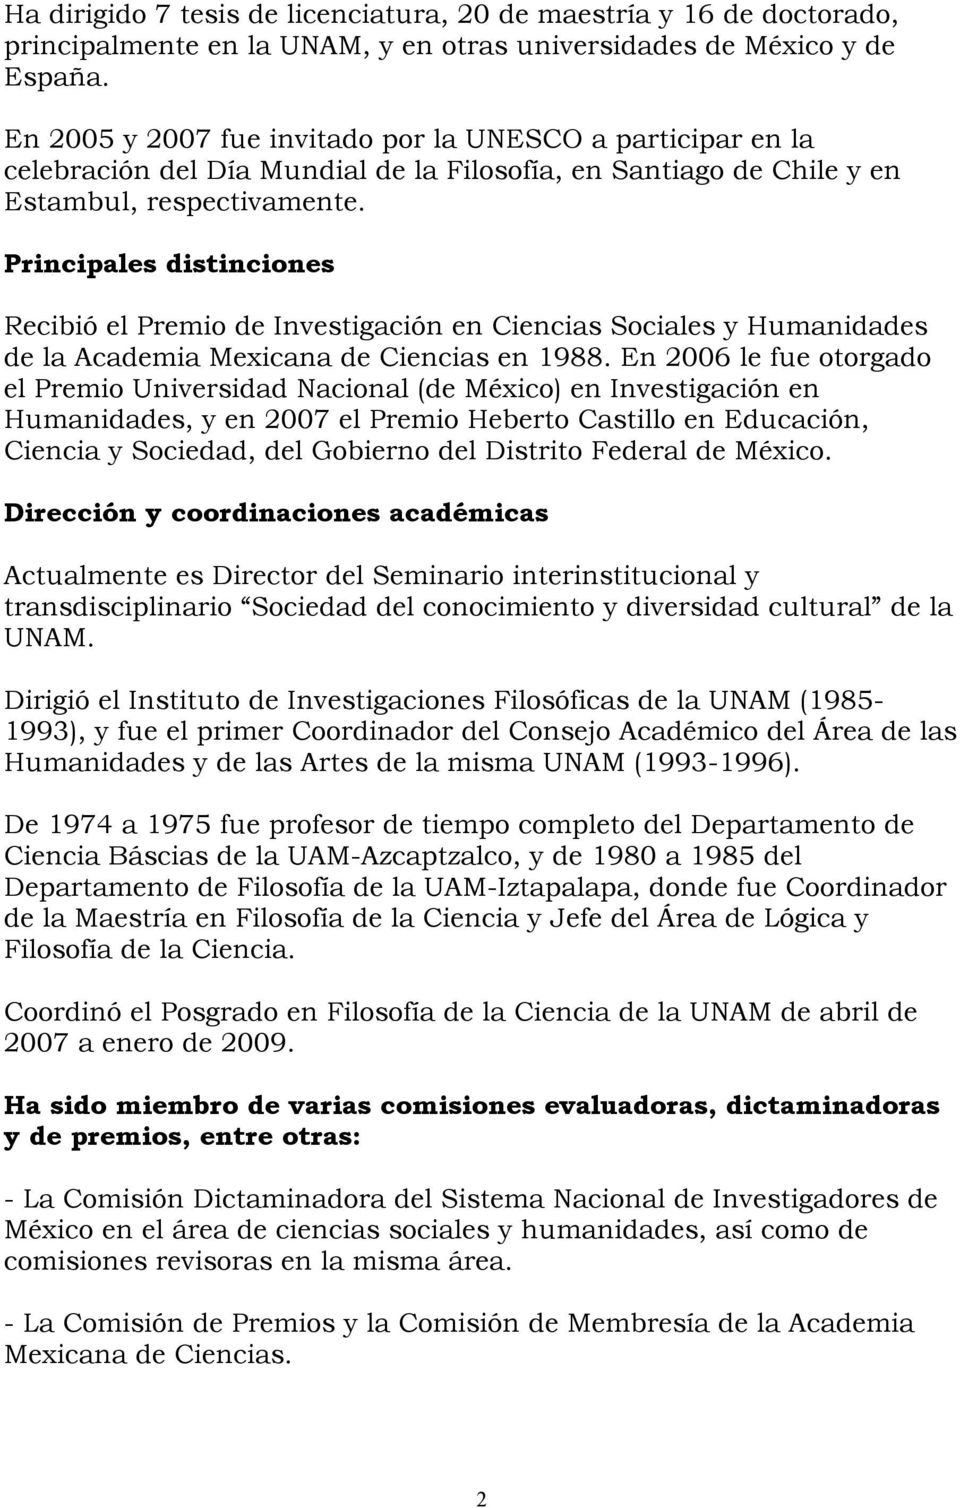 Principales distinciones Recibió el Premio de Investigación en Ciencias Sociales y Humanidades de la Academia Mexicana de Ciencias en 1988.